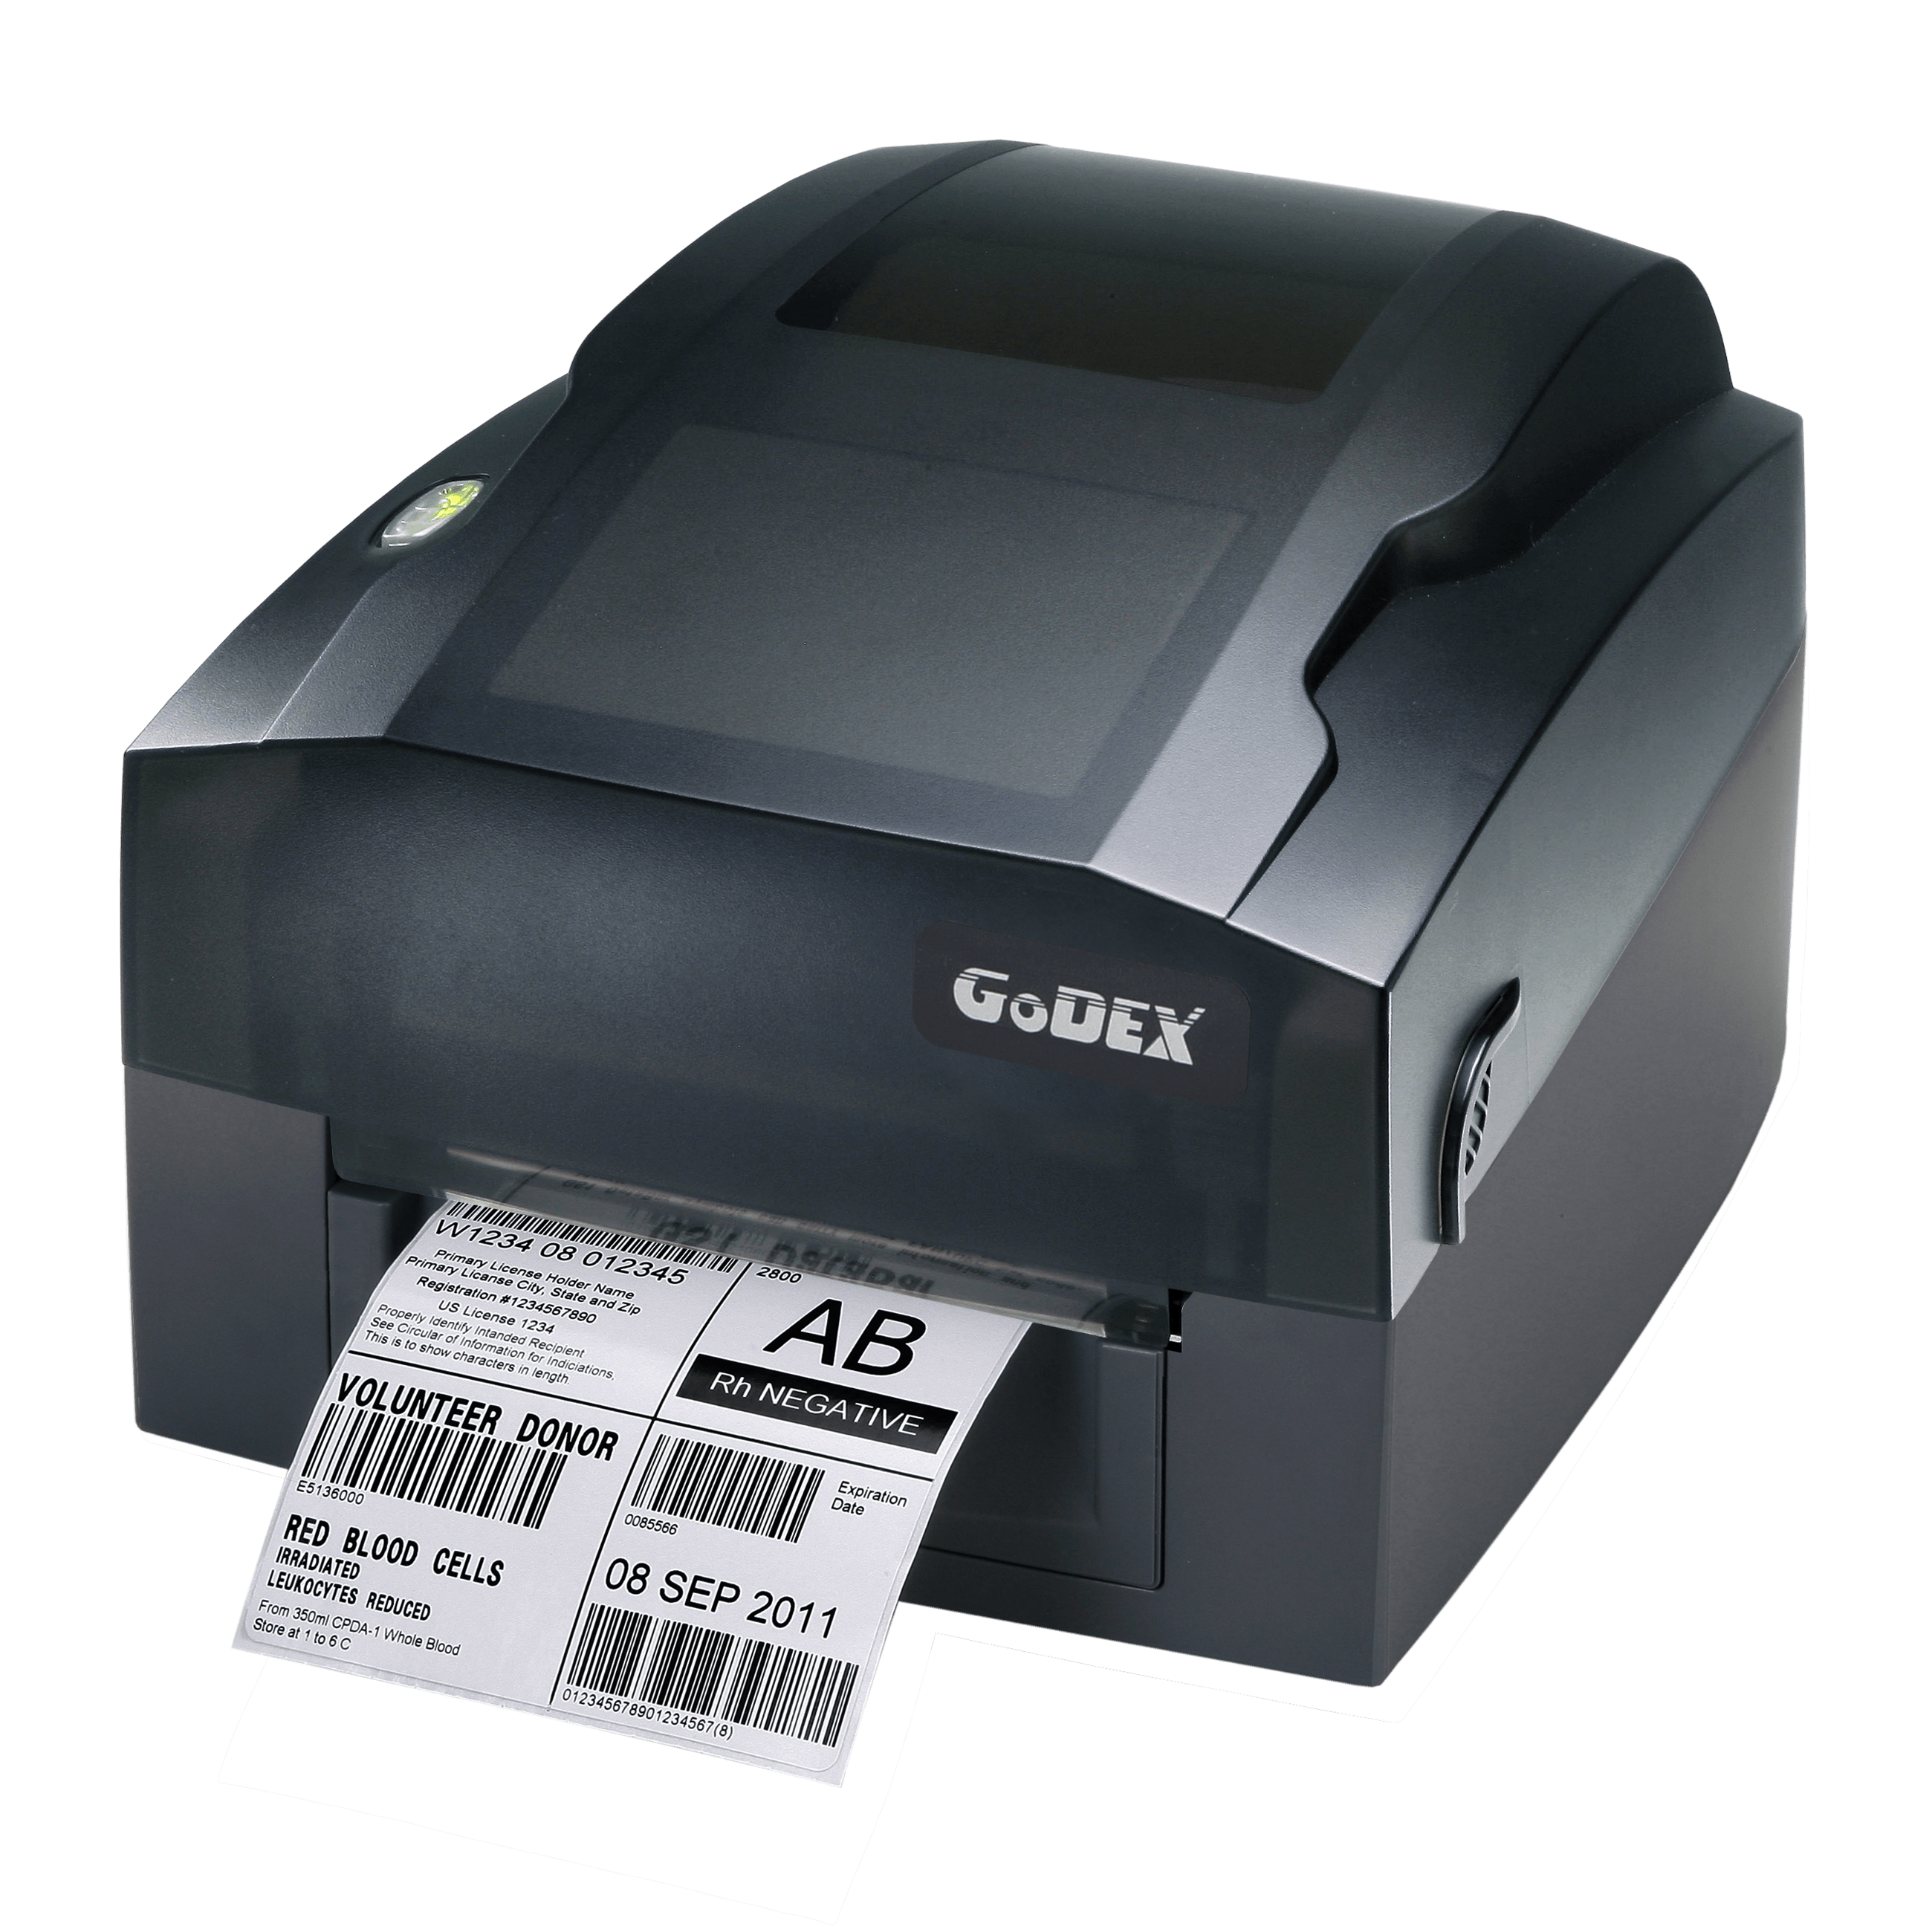 Godex G300 labelprinter